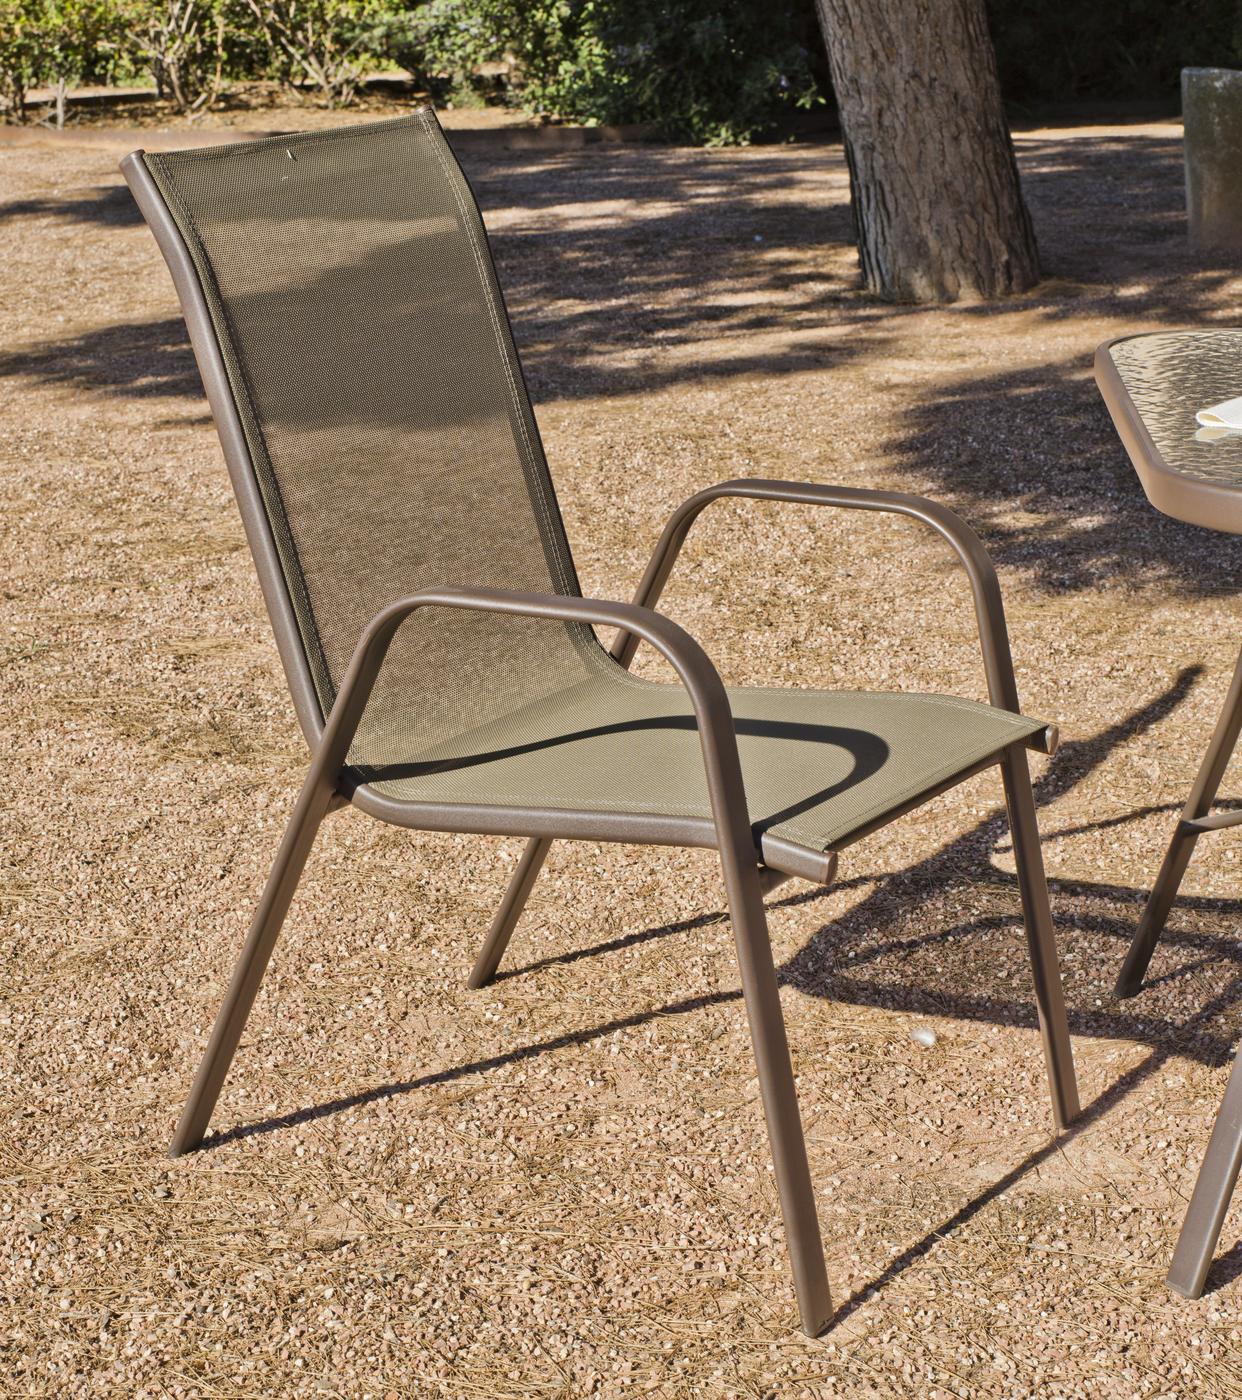 Set Acero Macao-21 - Conjunto de acero inoxidable color bronce: mesa auxiliar con tapa de cristal templado + 2 sillones apilables de acero y textilen + reposapies